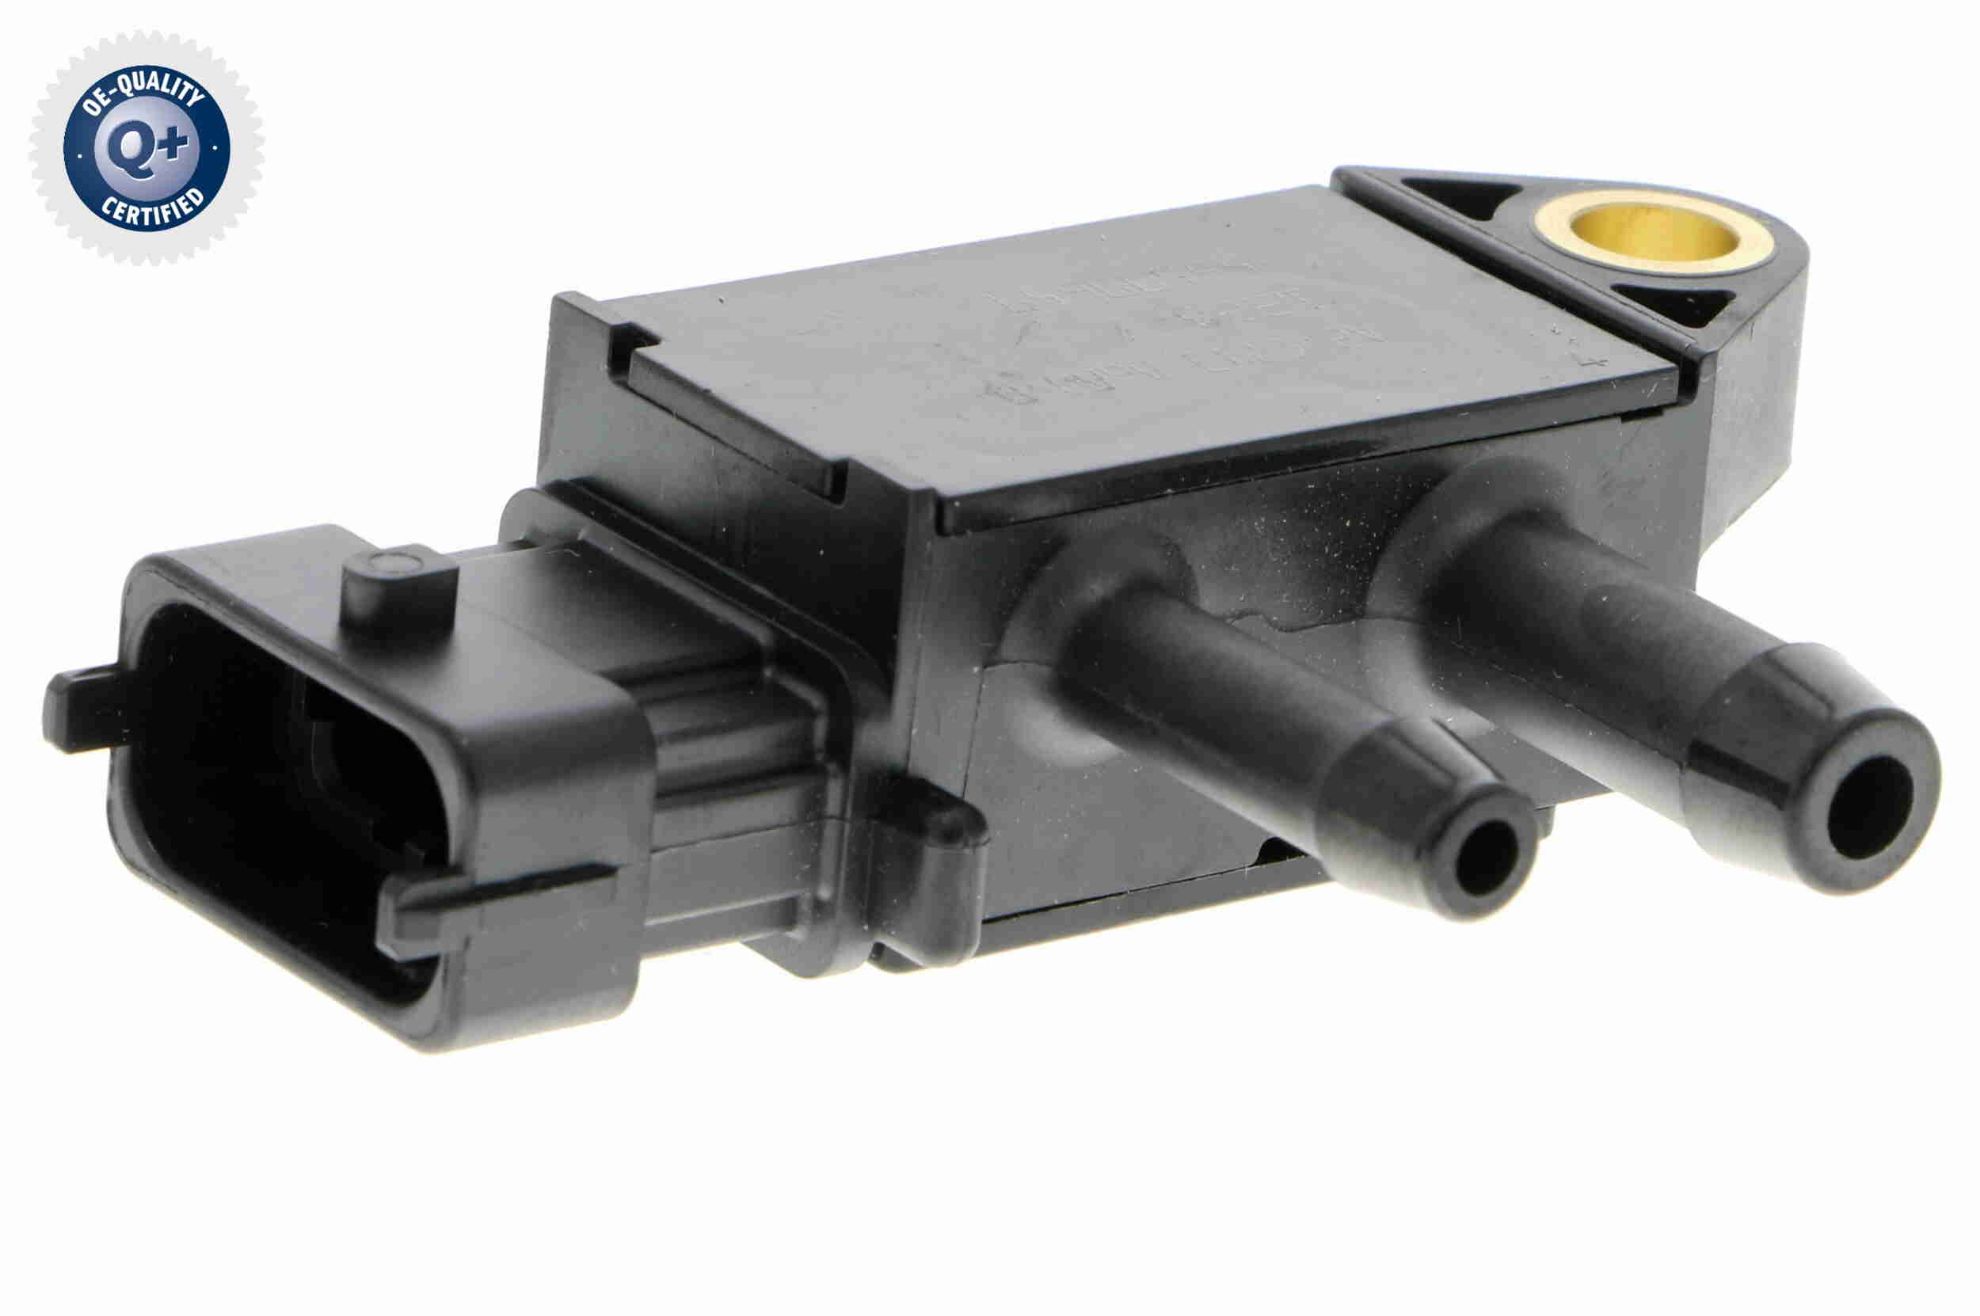 Obrázok Snímač tlaku výfukových plynov VEMO Q+, original equipment manufacturer quality V40720027